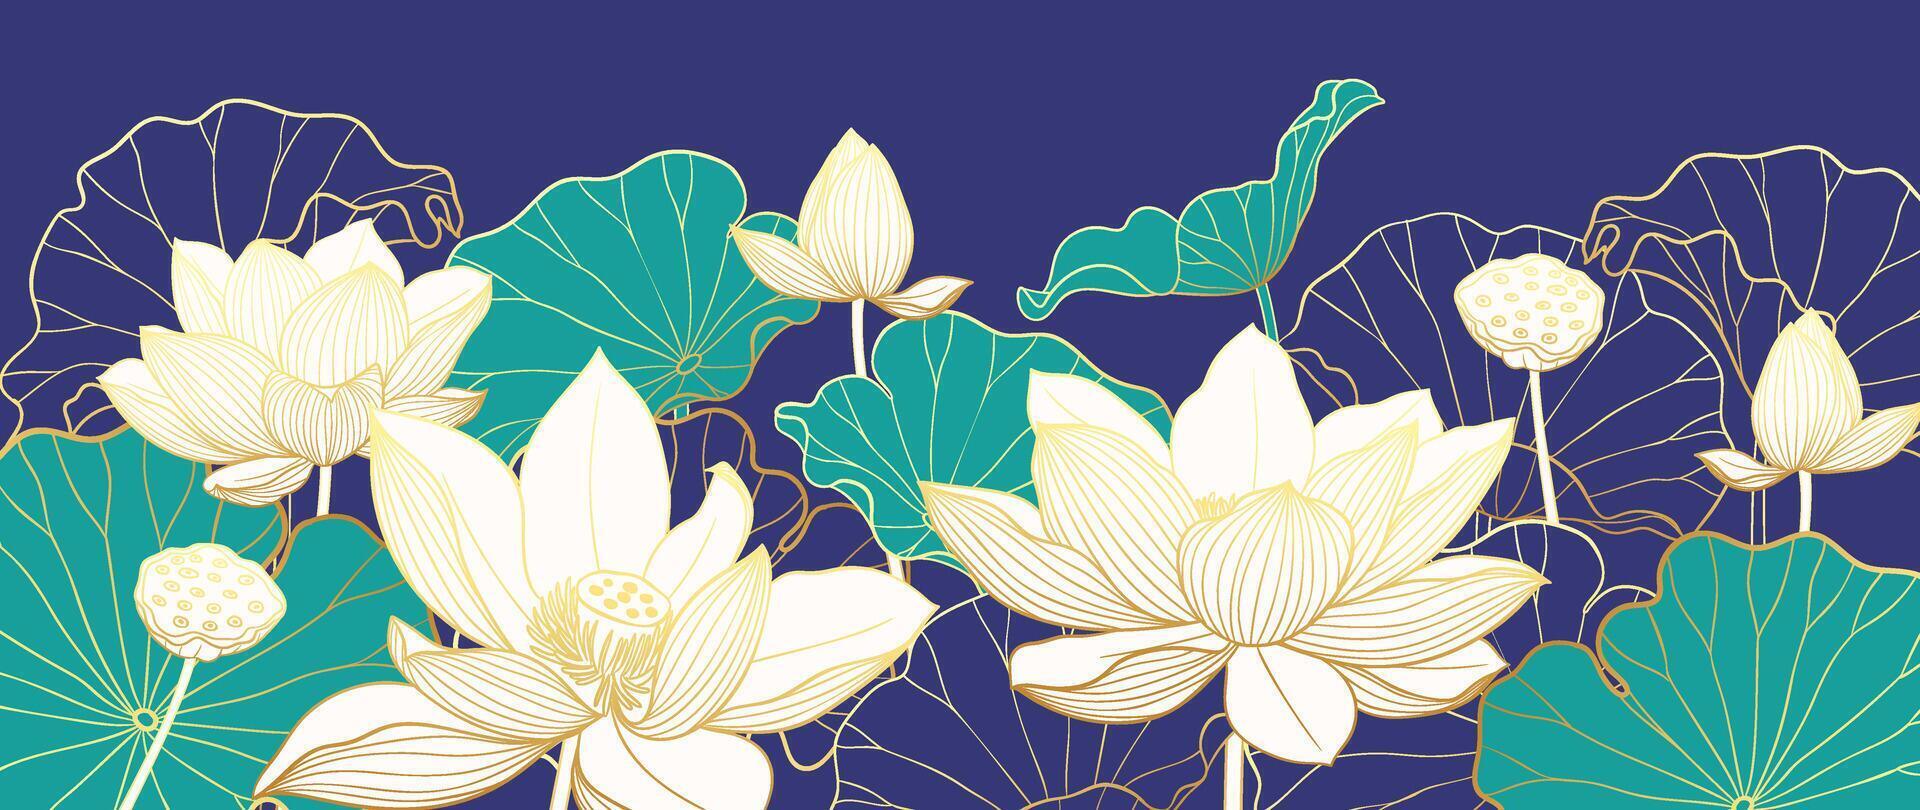 Luxus Lotus Blume Hintergrund . elegant Weiß Lotus Blumen golden Linie Kunst, Blätter, Gradient Farbe auf Blau. japanisch und Chinesisch Illustration Design zum Dekor, Hintergrund, Banner, Verpackung. vektor